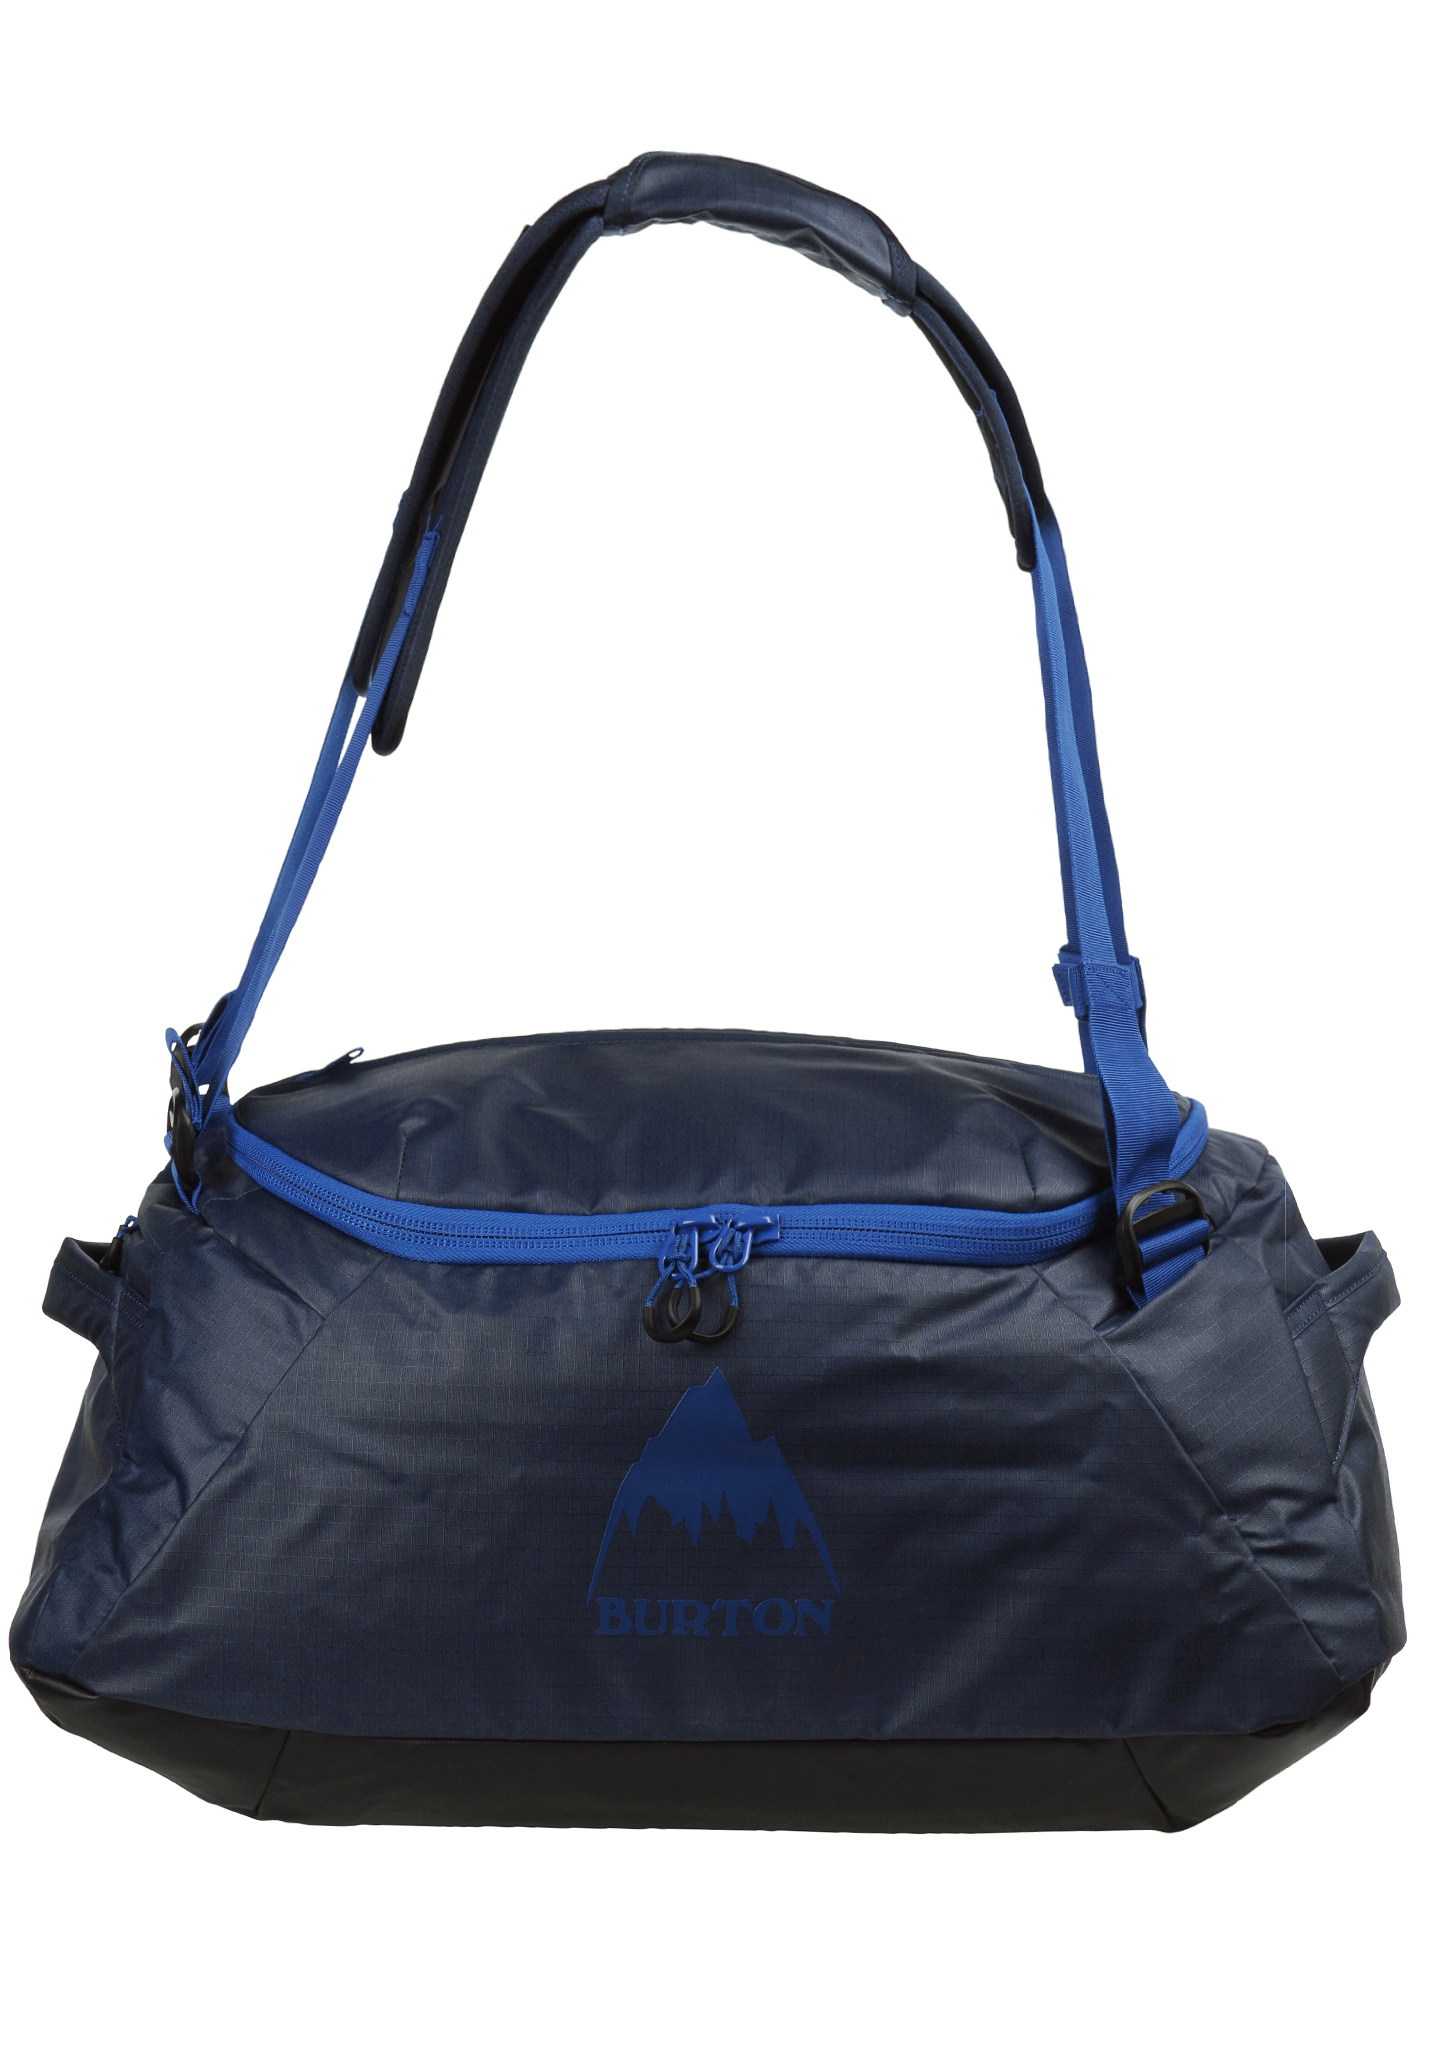 Burton Multipath S 40L Sporttaschen kleid blau beschichtet One Size